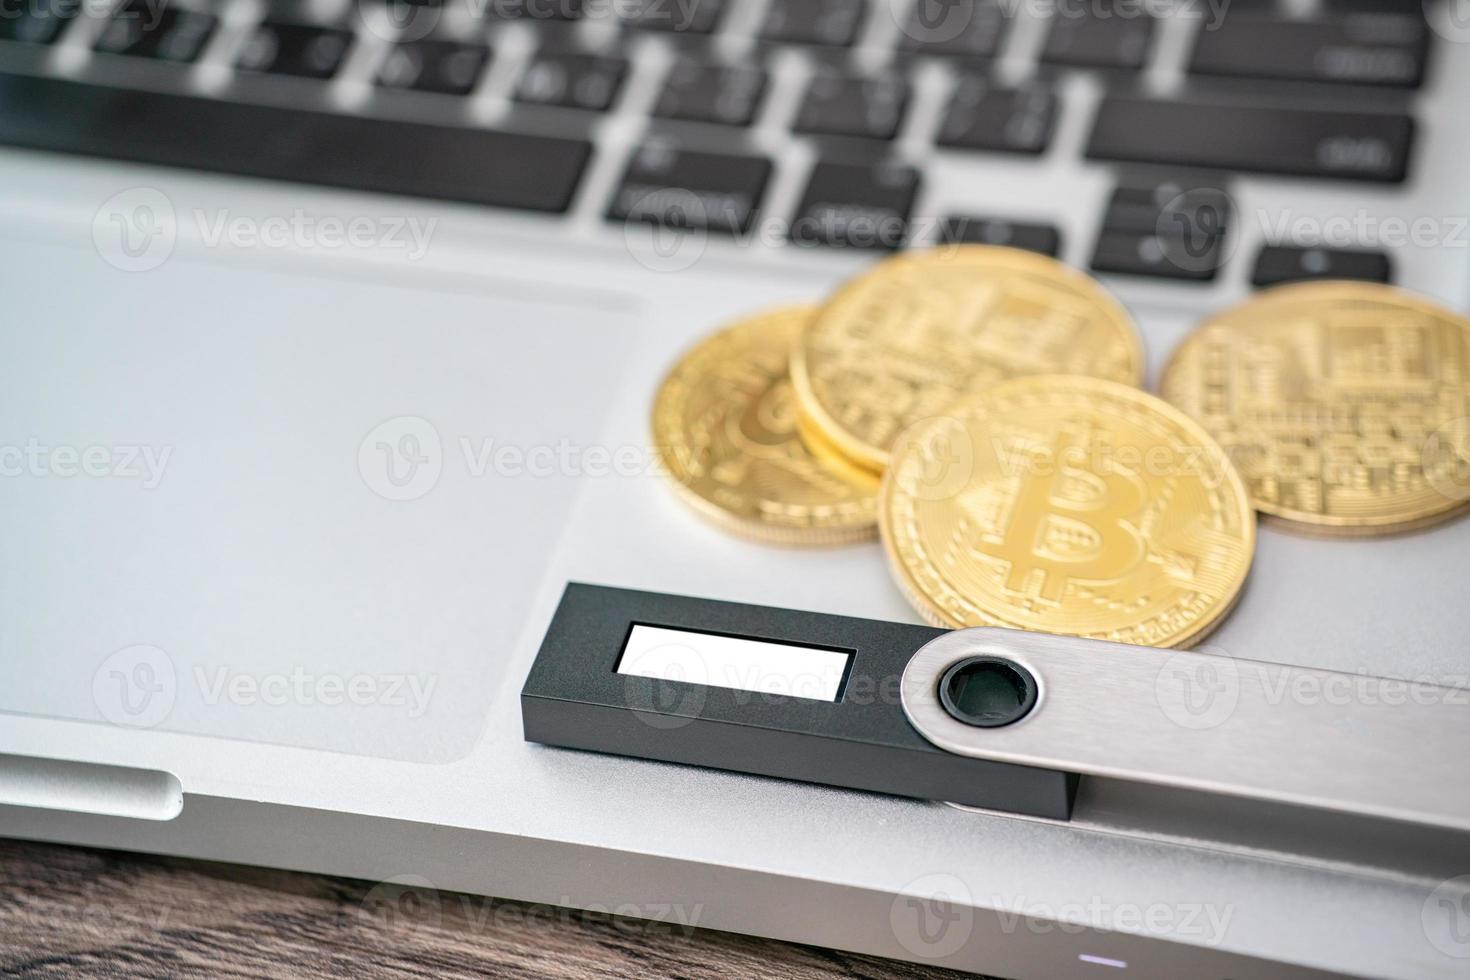 hardware-kryptowährungsgeldbörse mit goldenem bitcoin btc auf dem computer. sicherer Speicher für Krypto. foto